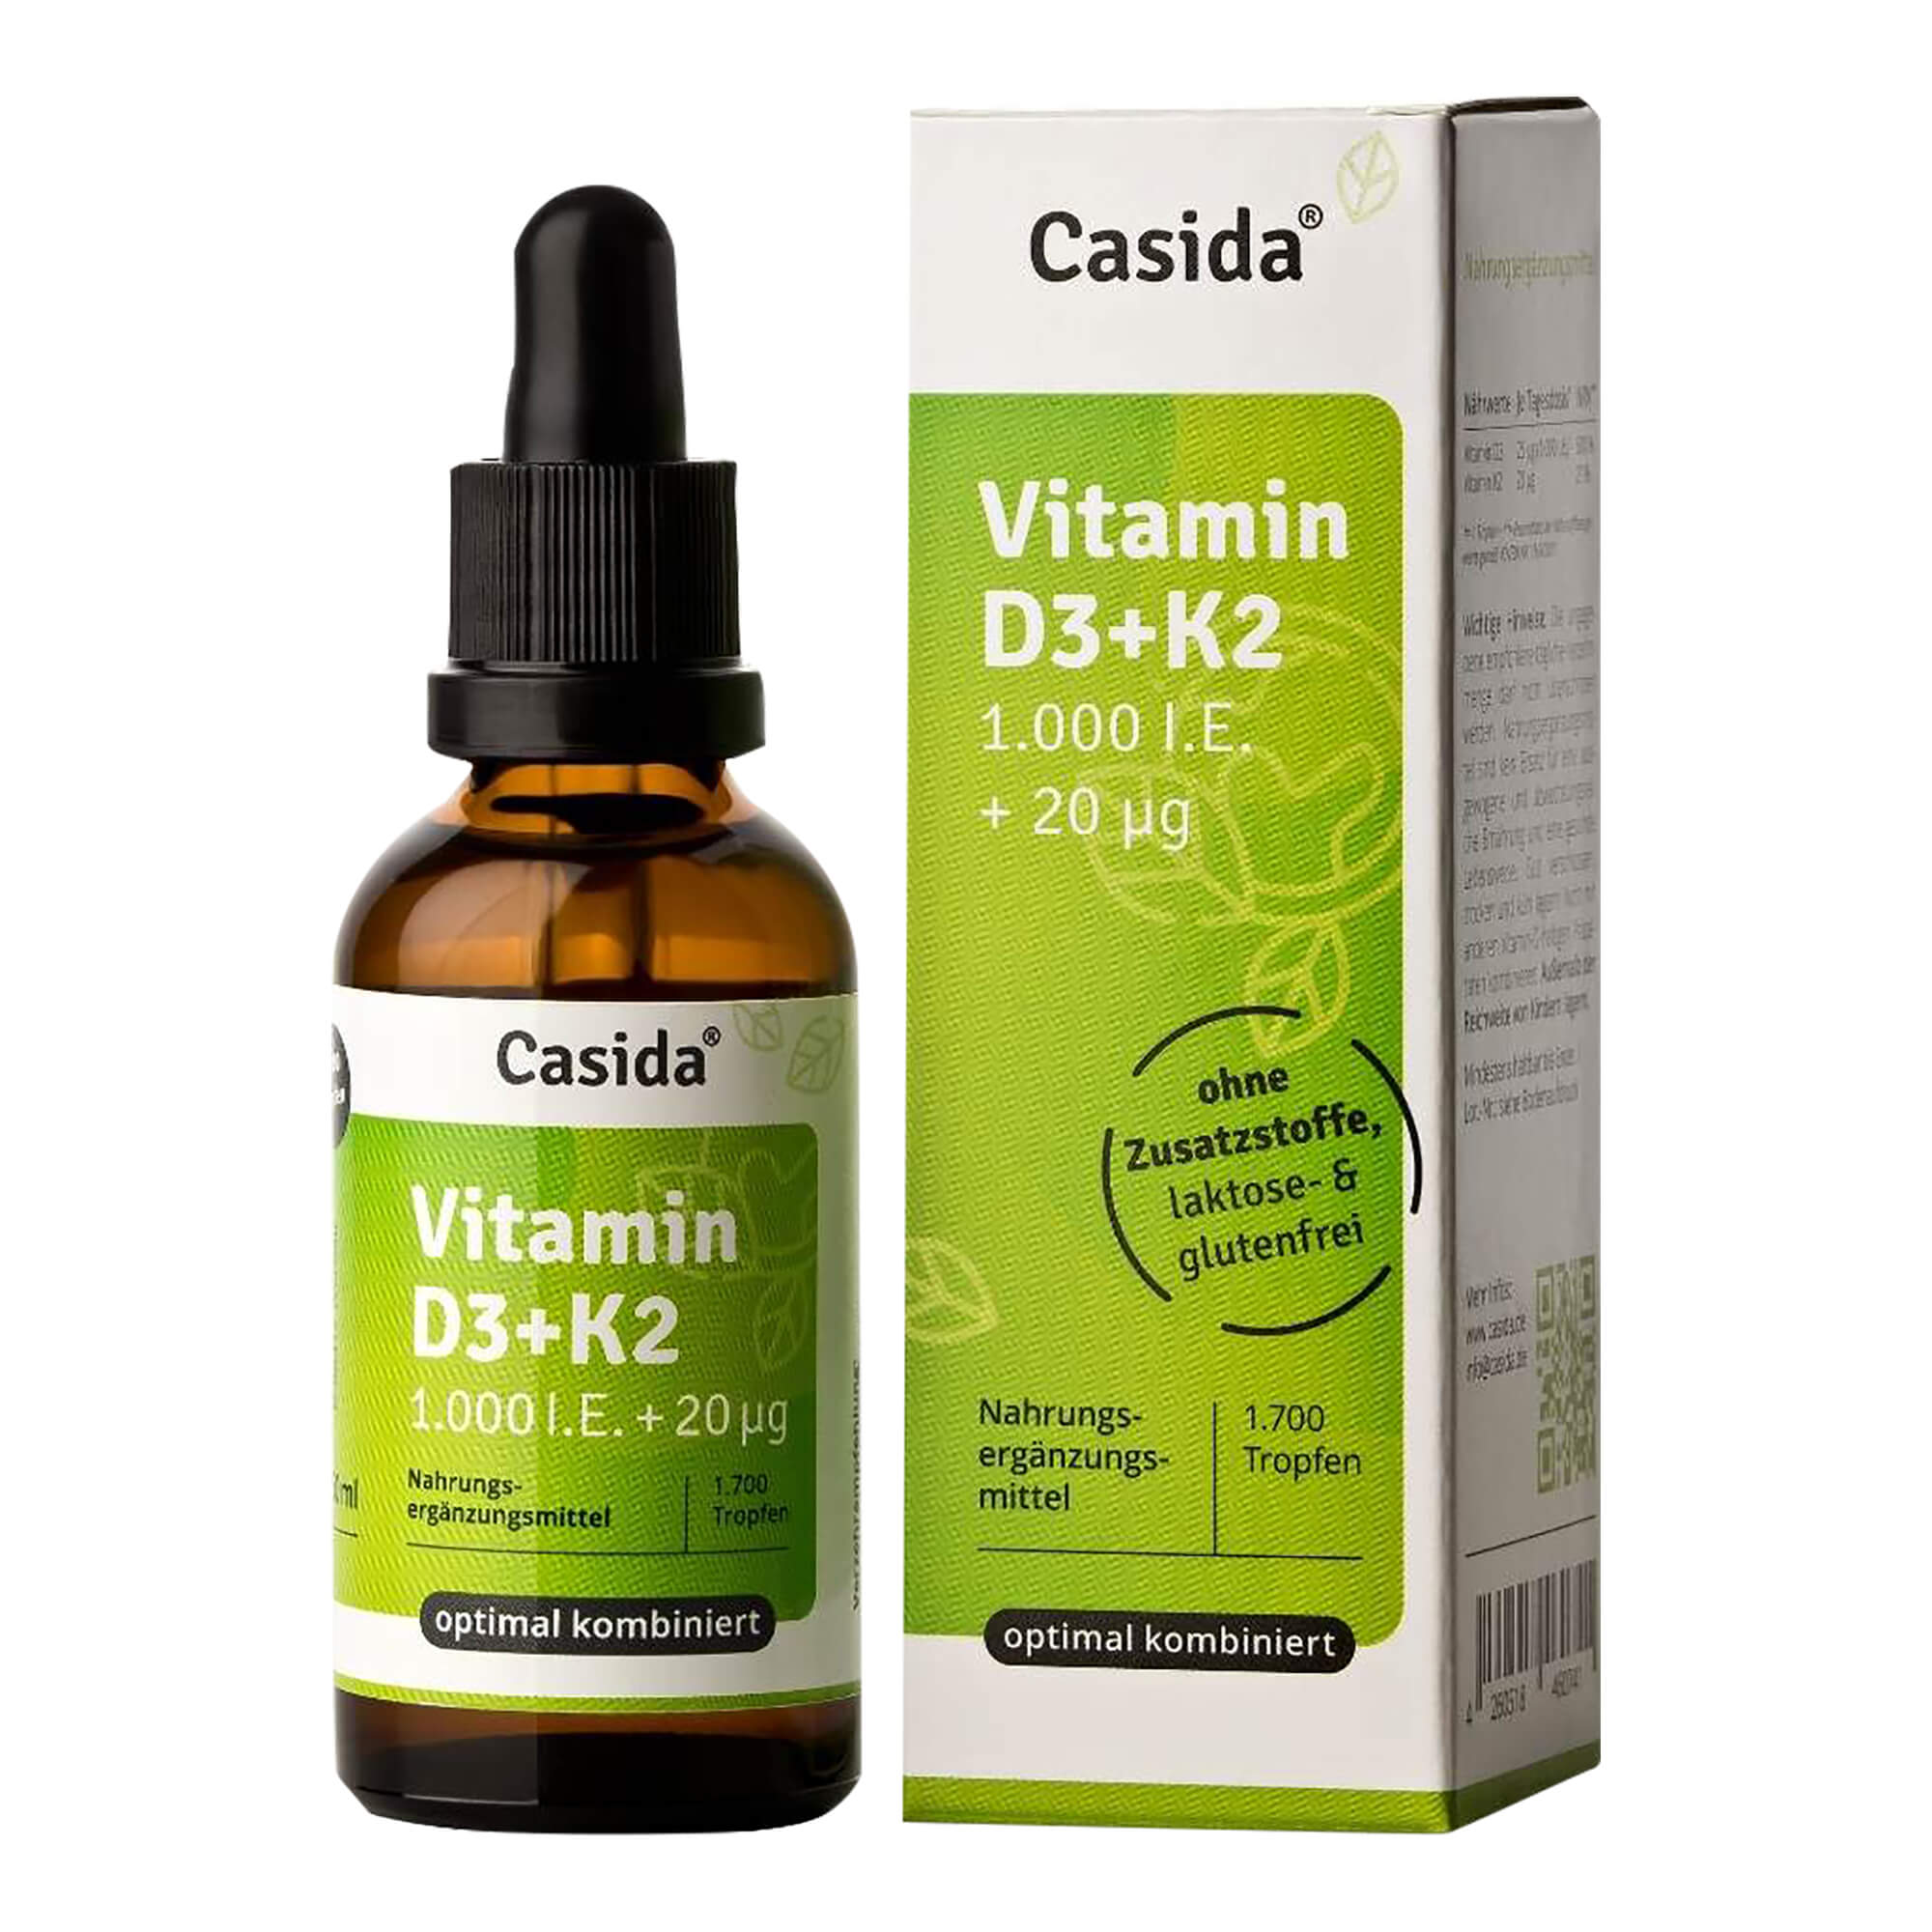 Nahrungseränzungsmittel mit Vitamin D3 und Vitamin K2.